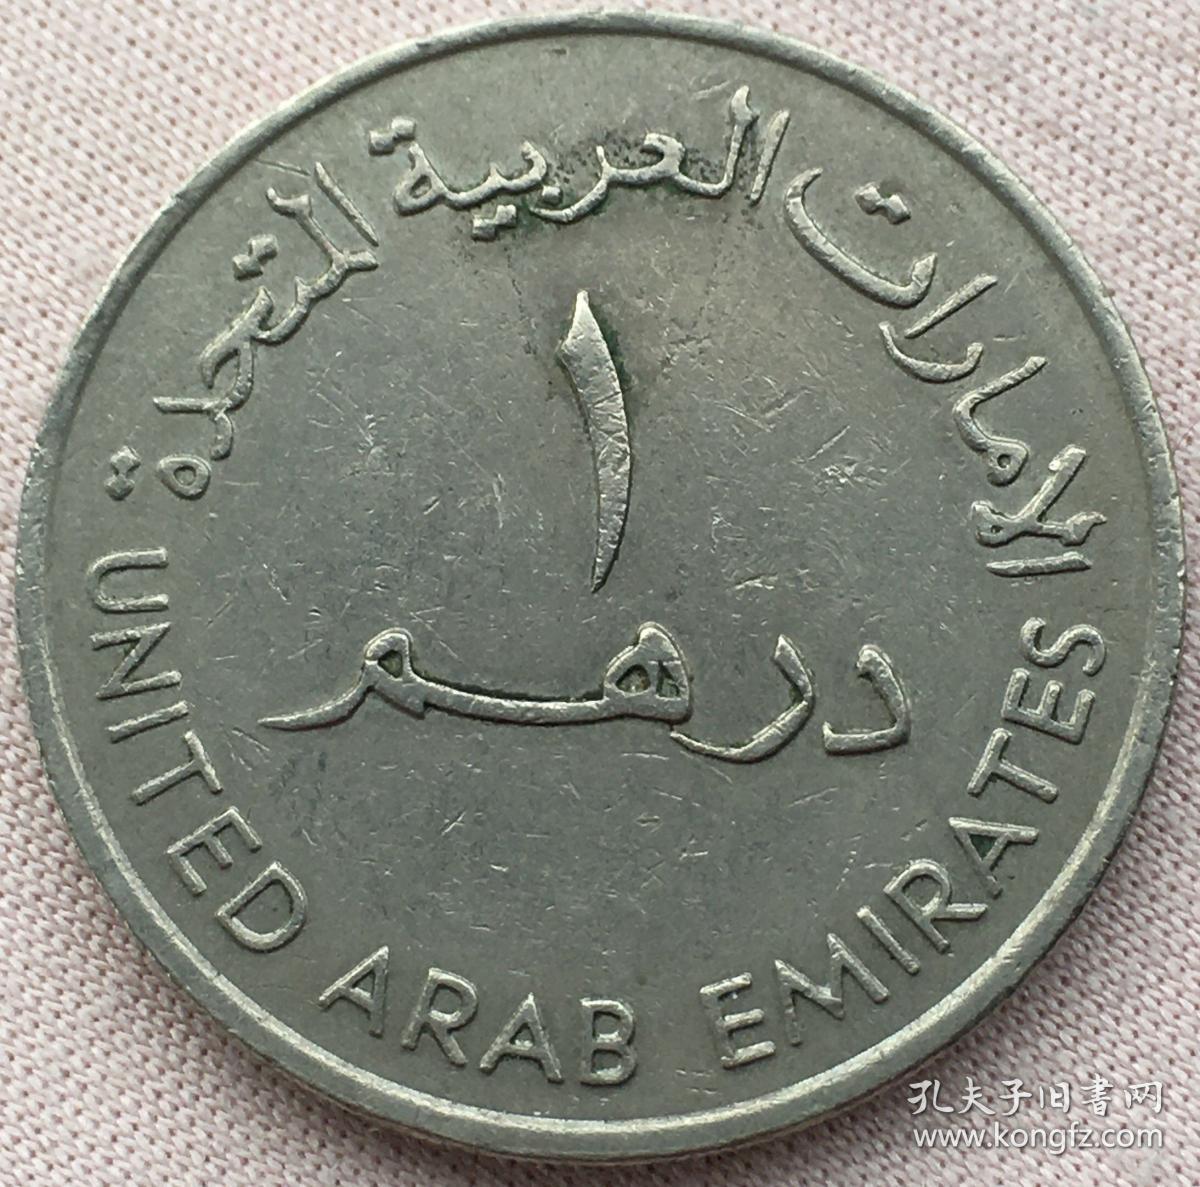 阿联酋的硬币 沙子瞪羚 库存照片. 图片 包括有 现金, 造币, 伊斯兰, 聚会所, 关闭, 登记, 货币 - 71780050